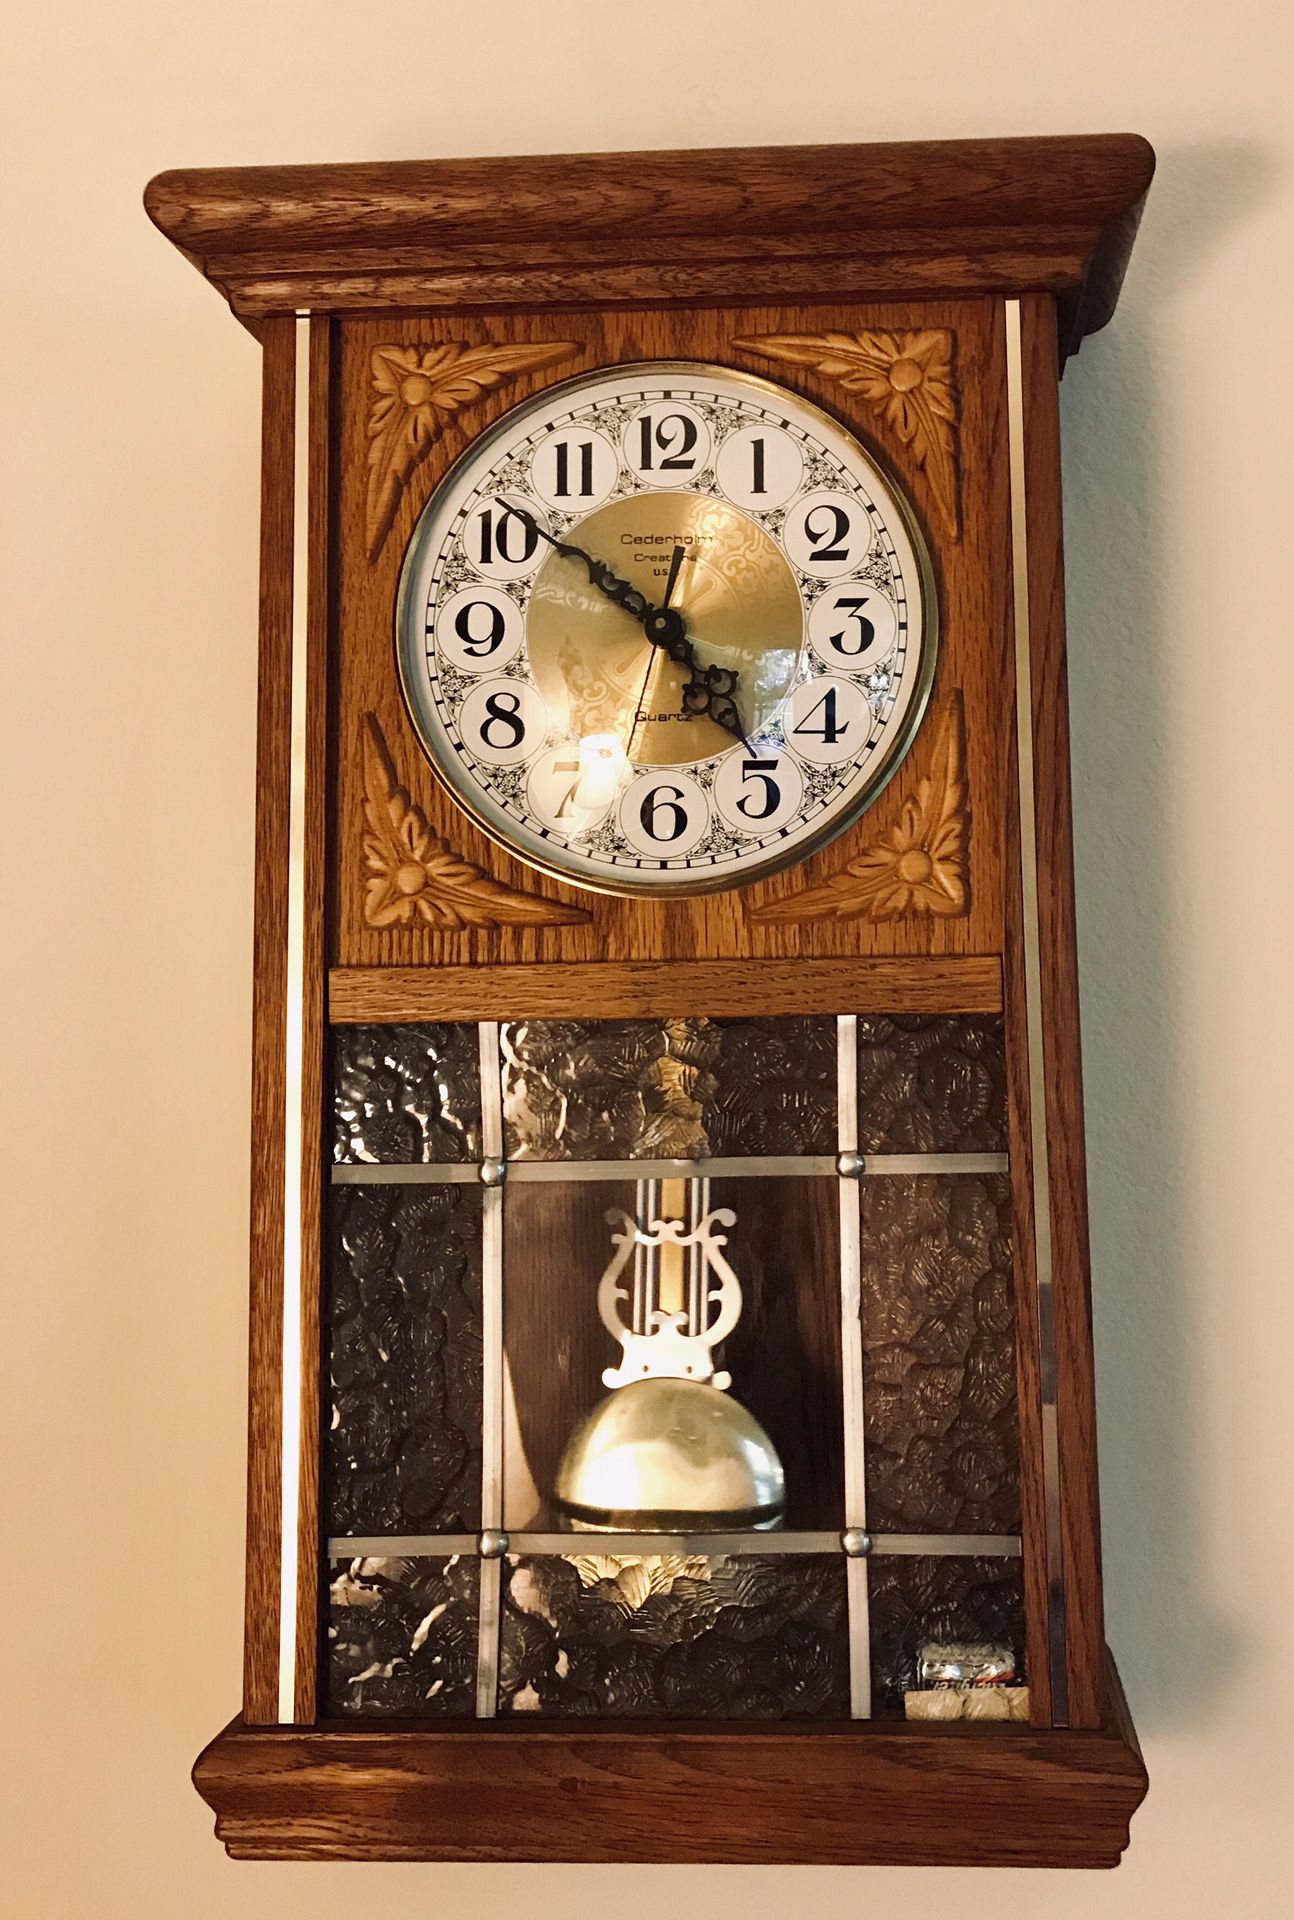 Wall Clock for Sale in Turlock, CA - OfferUp